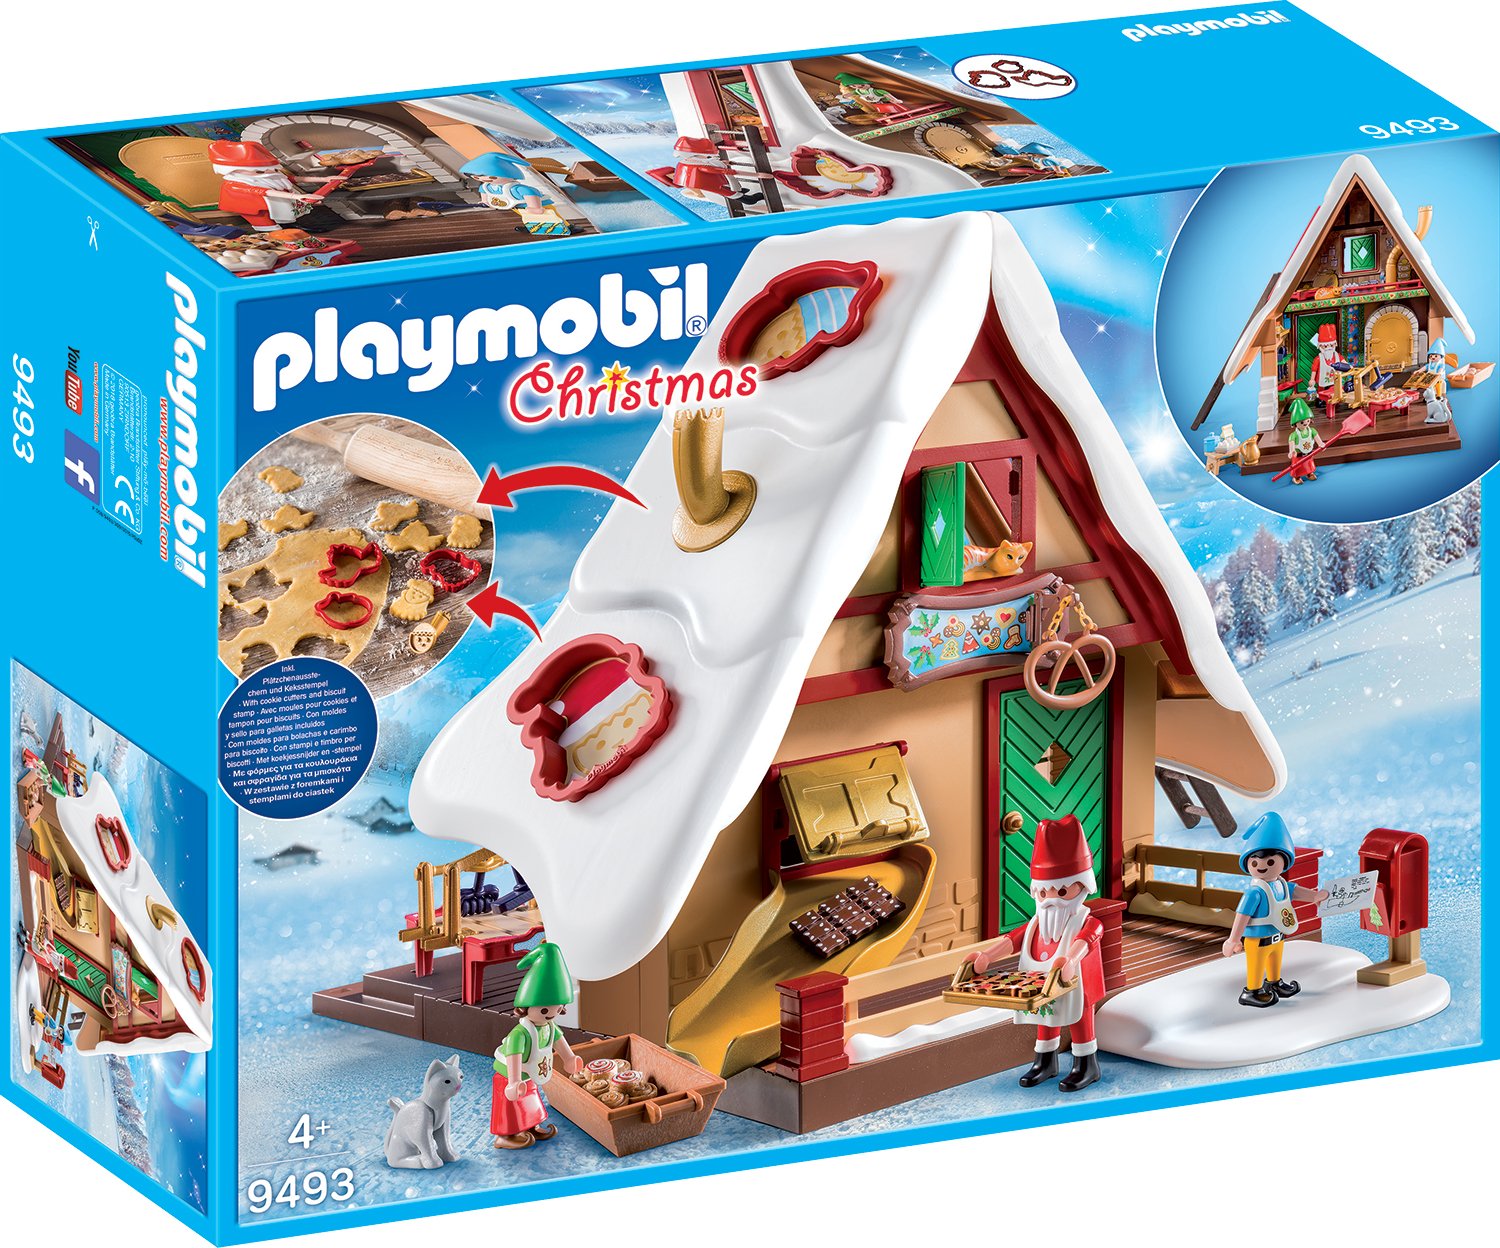 PLAYMOBIL Christmas 9493 Weihnachtsbäckerei mit Plätzchenformen, Ab 4 Jahren